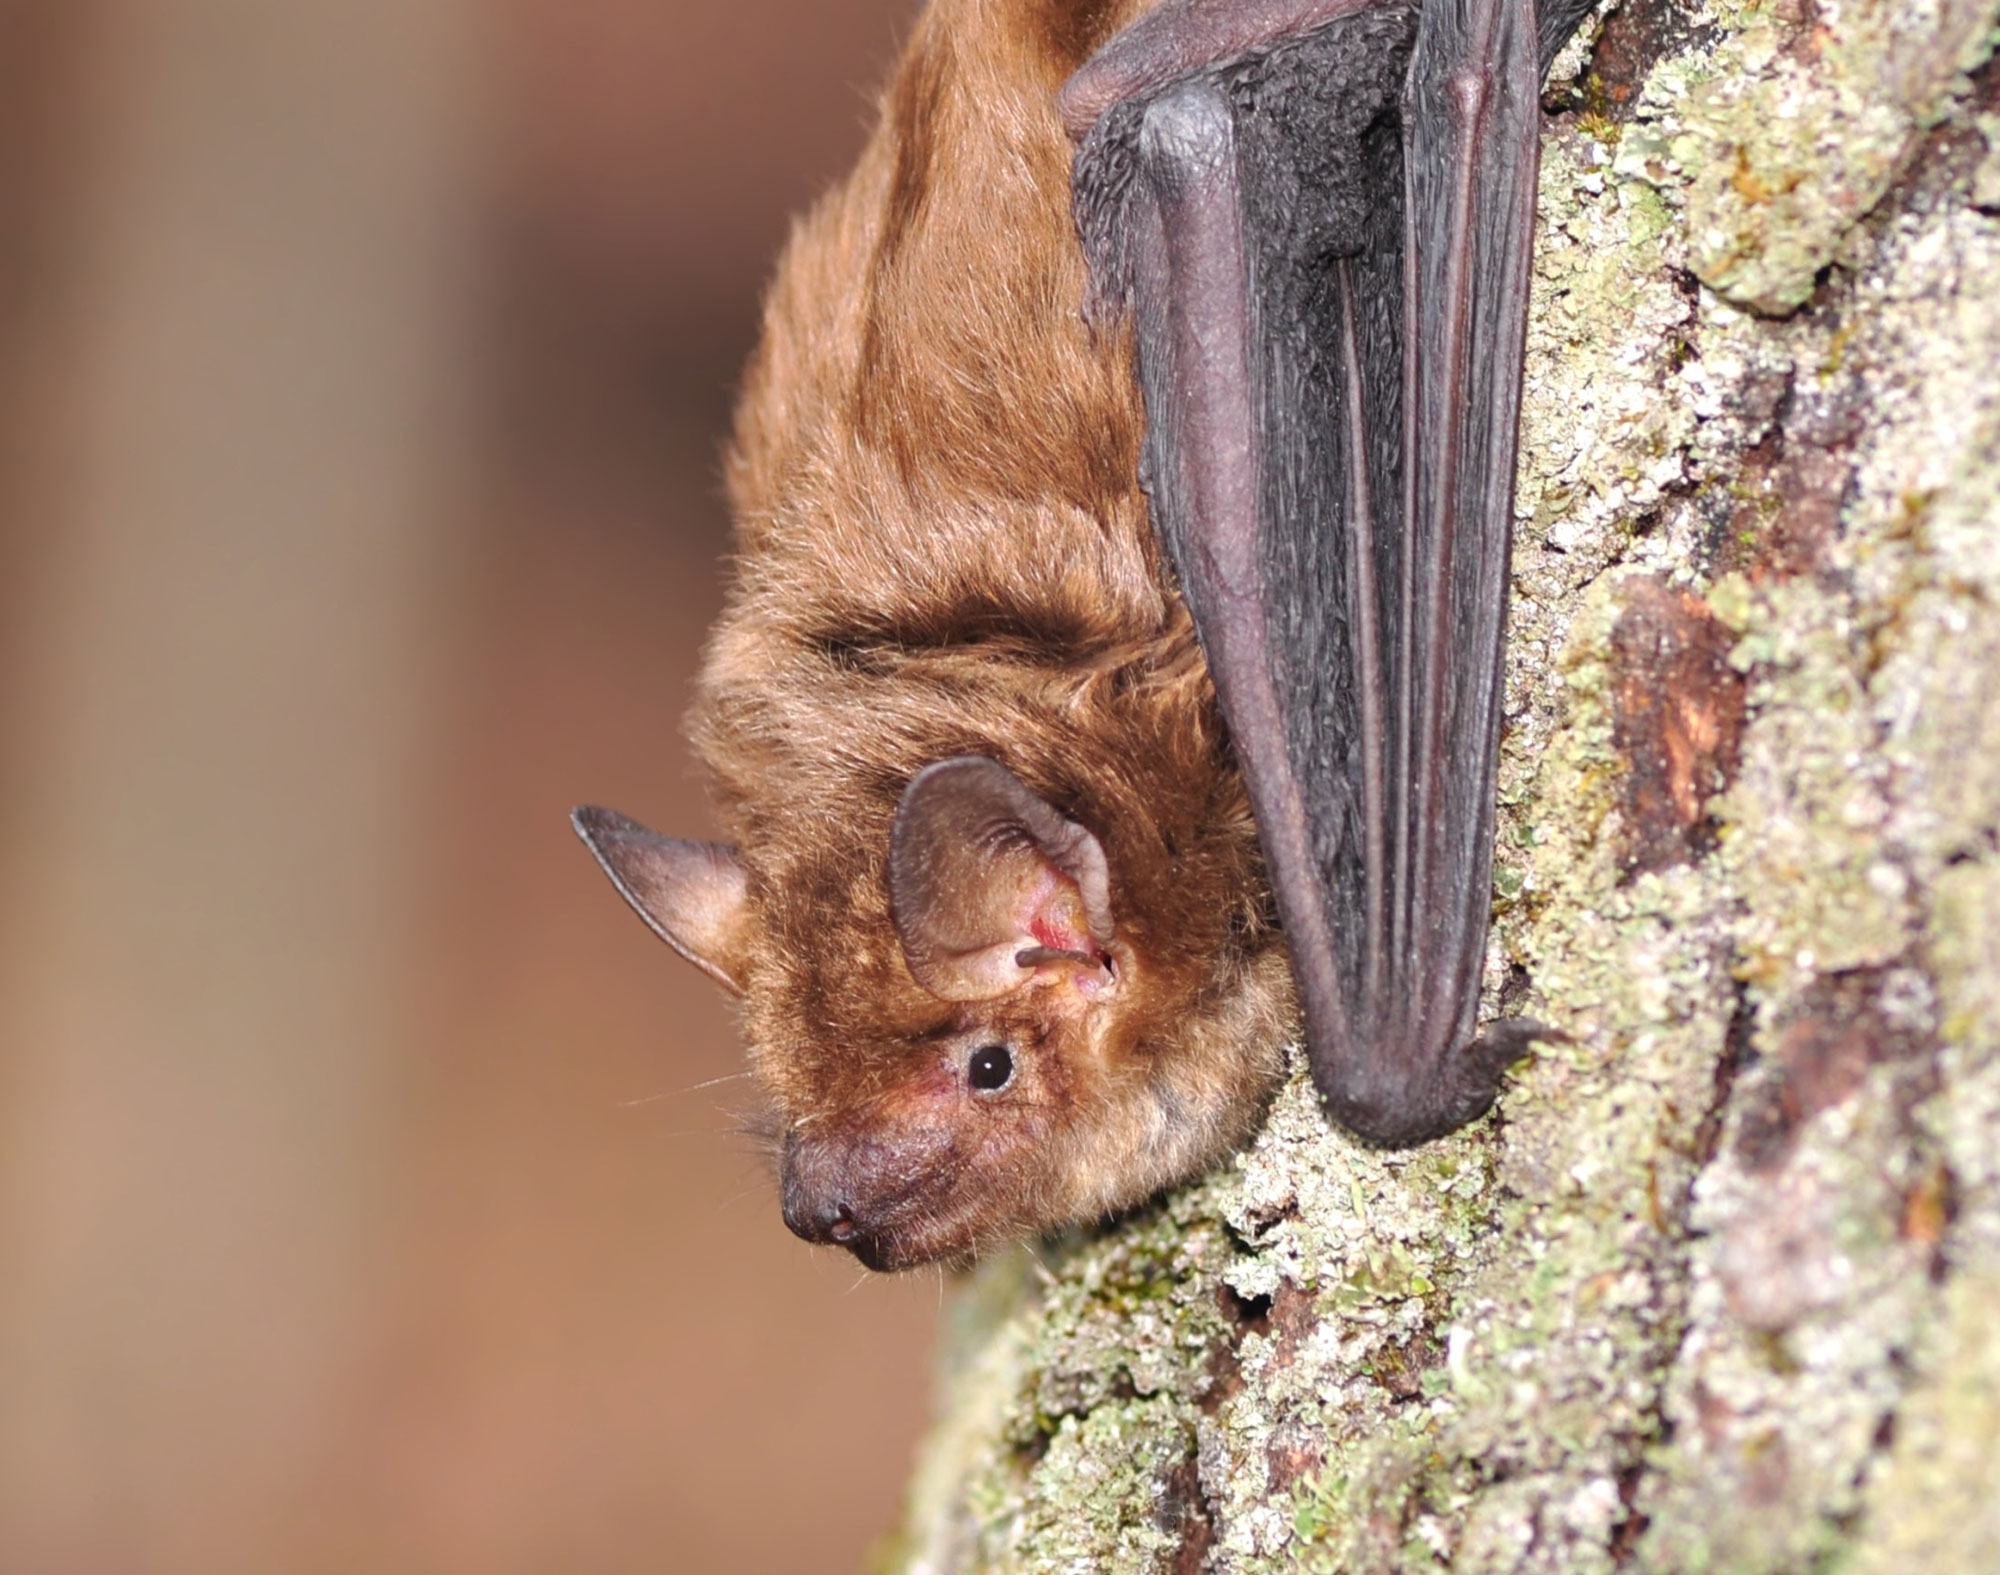 A big brown bat on tree bark.